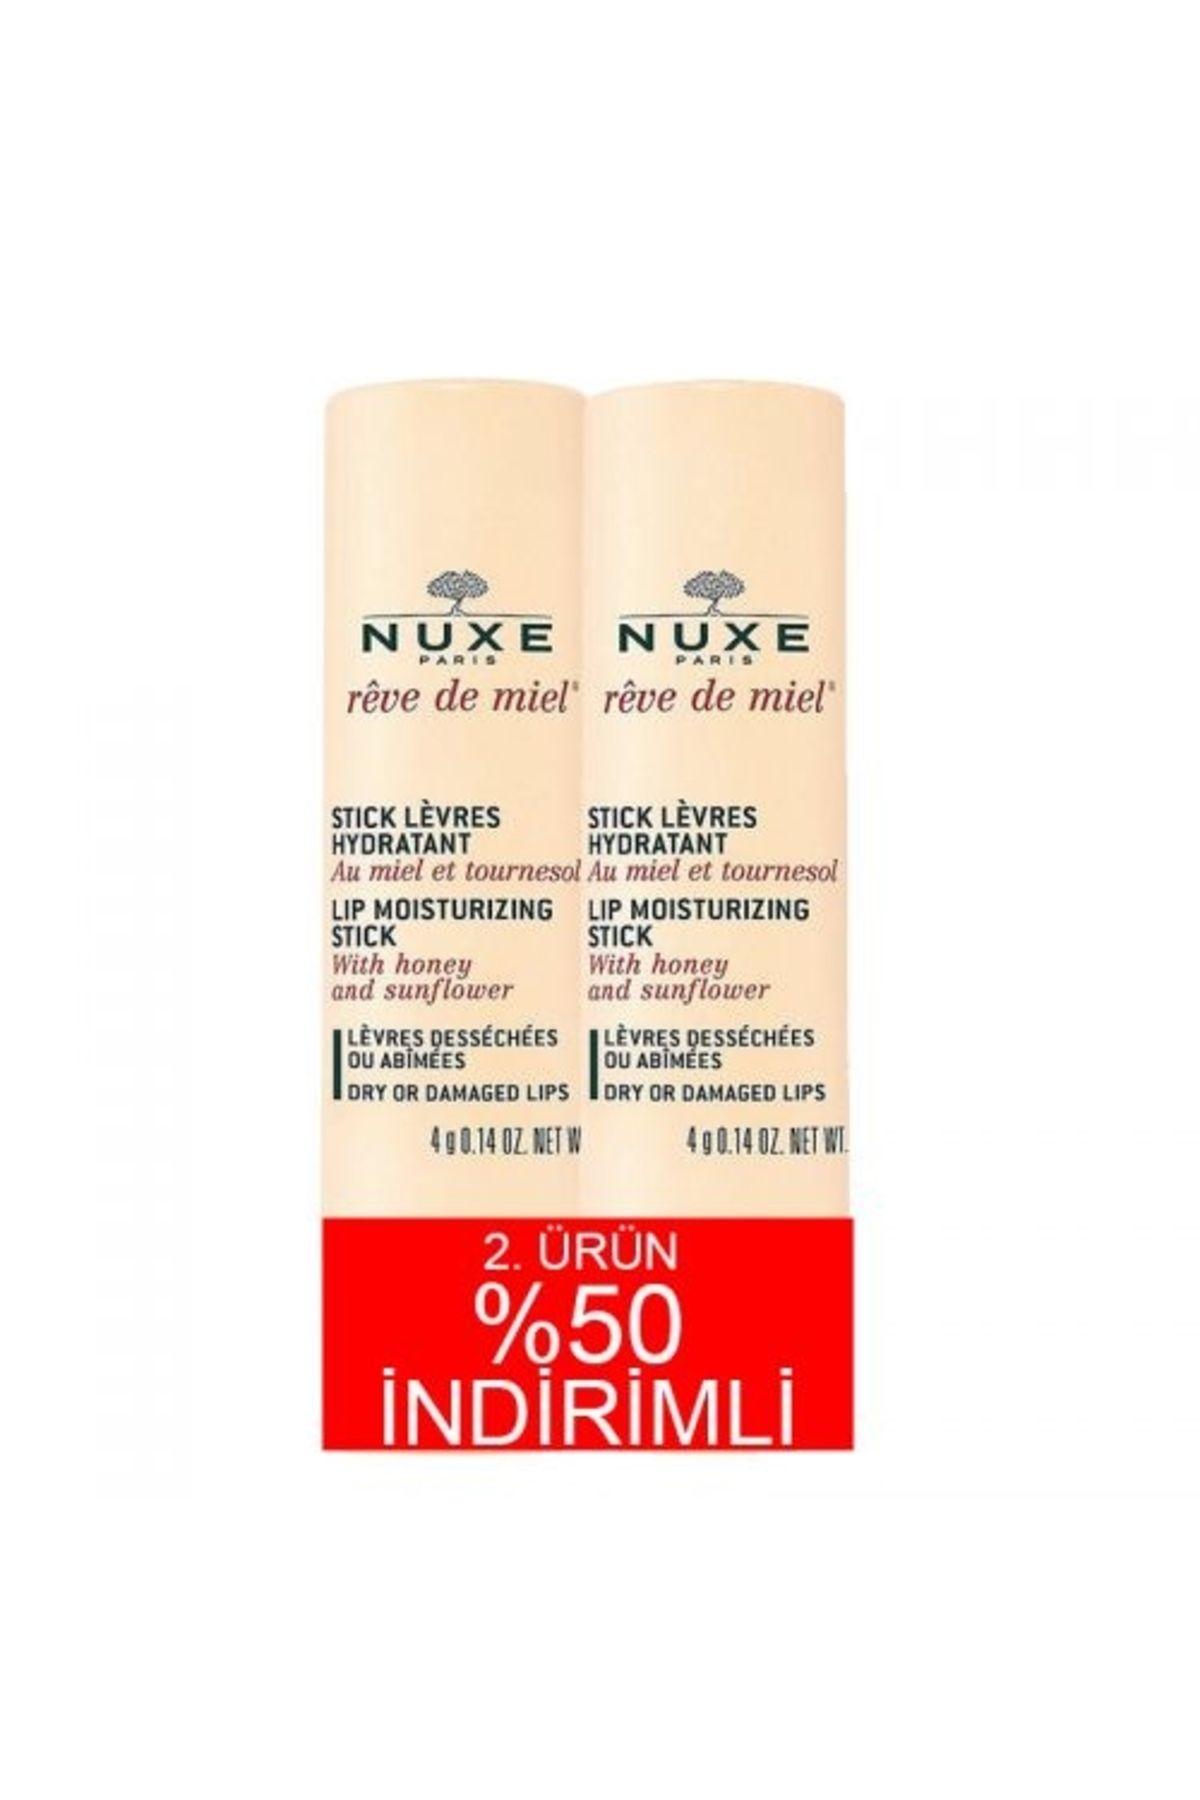 Nuxe Reve De Miel Stick Levres 2x4gr 2.ürün %50